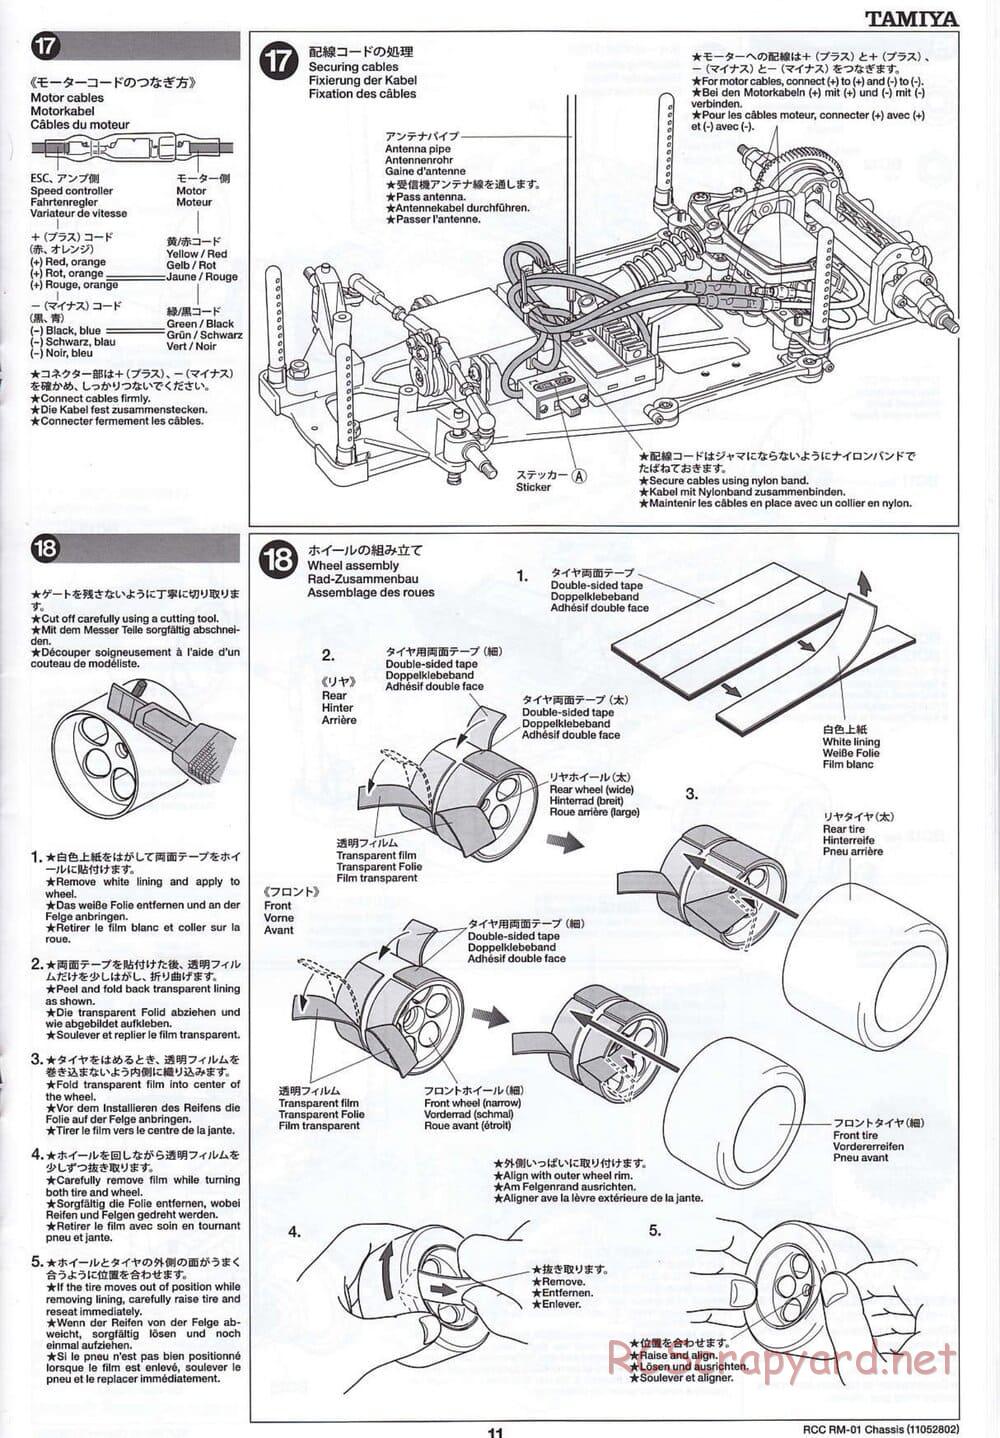 Tamiya - TA04-SS Chassis - Manual - Page 11